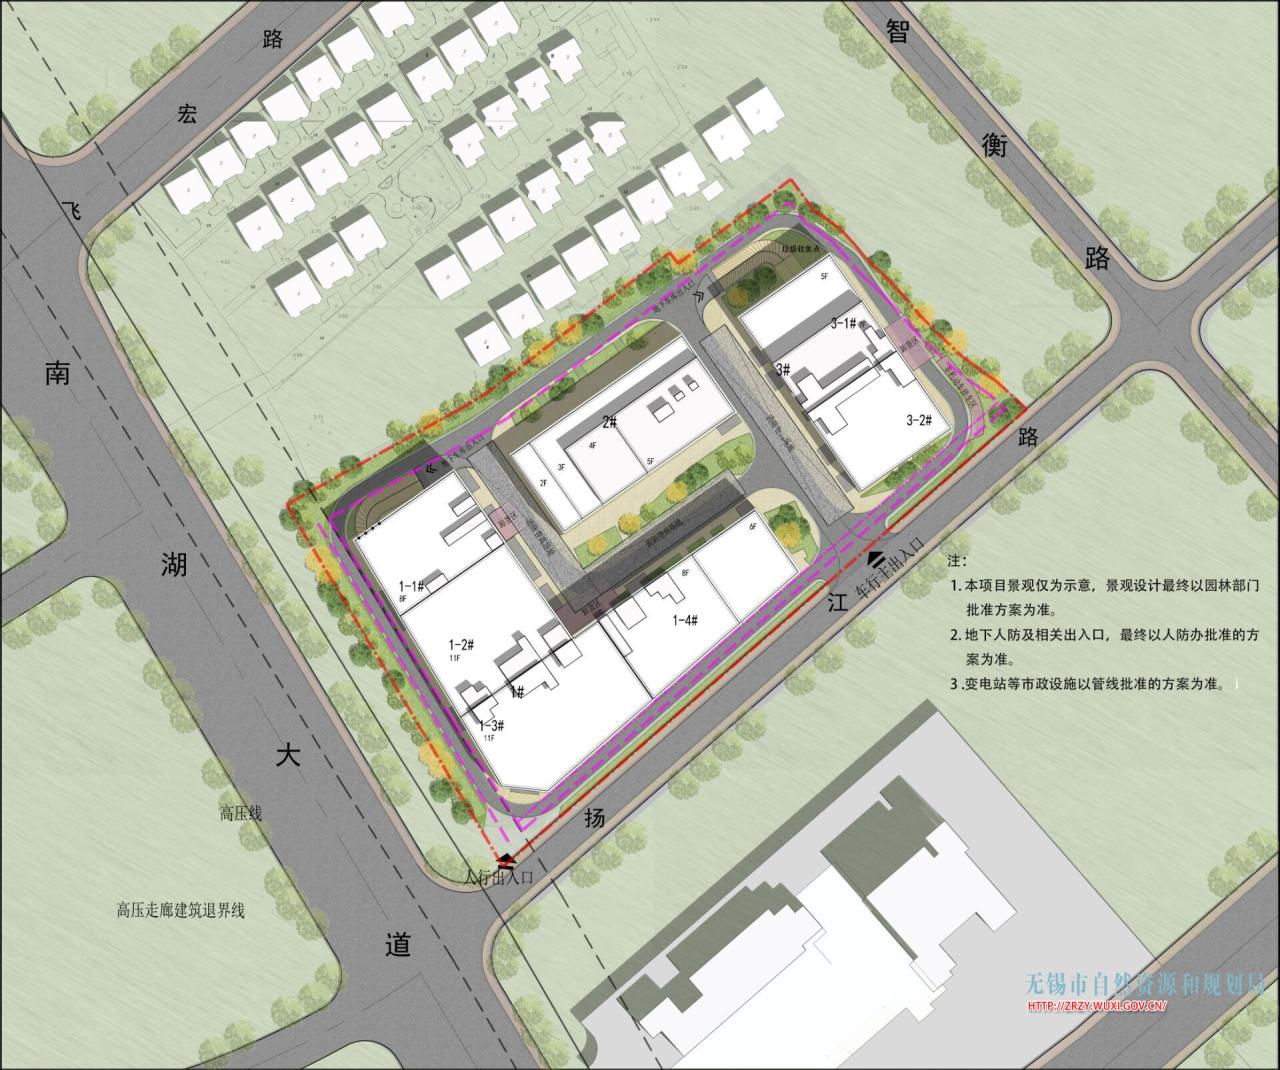 XDG-2021-51号地块项目规划设计方案批前公示